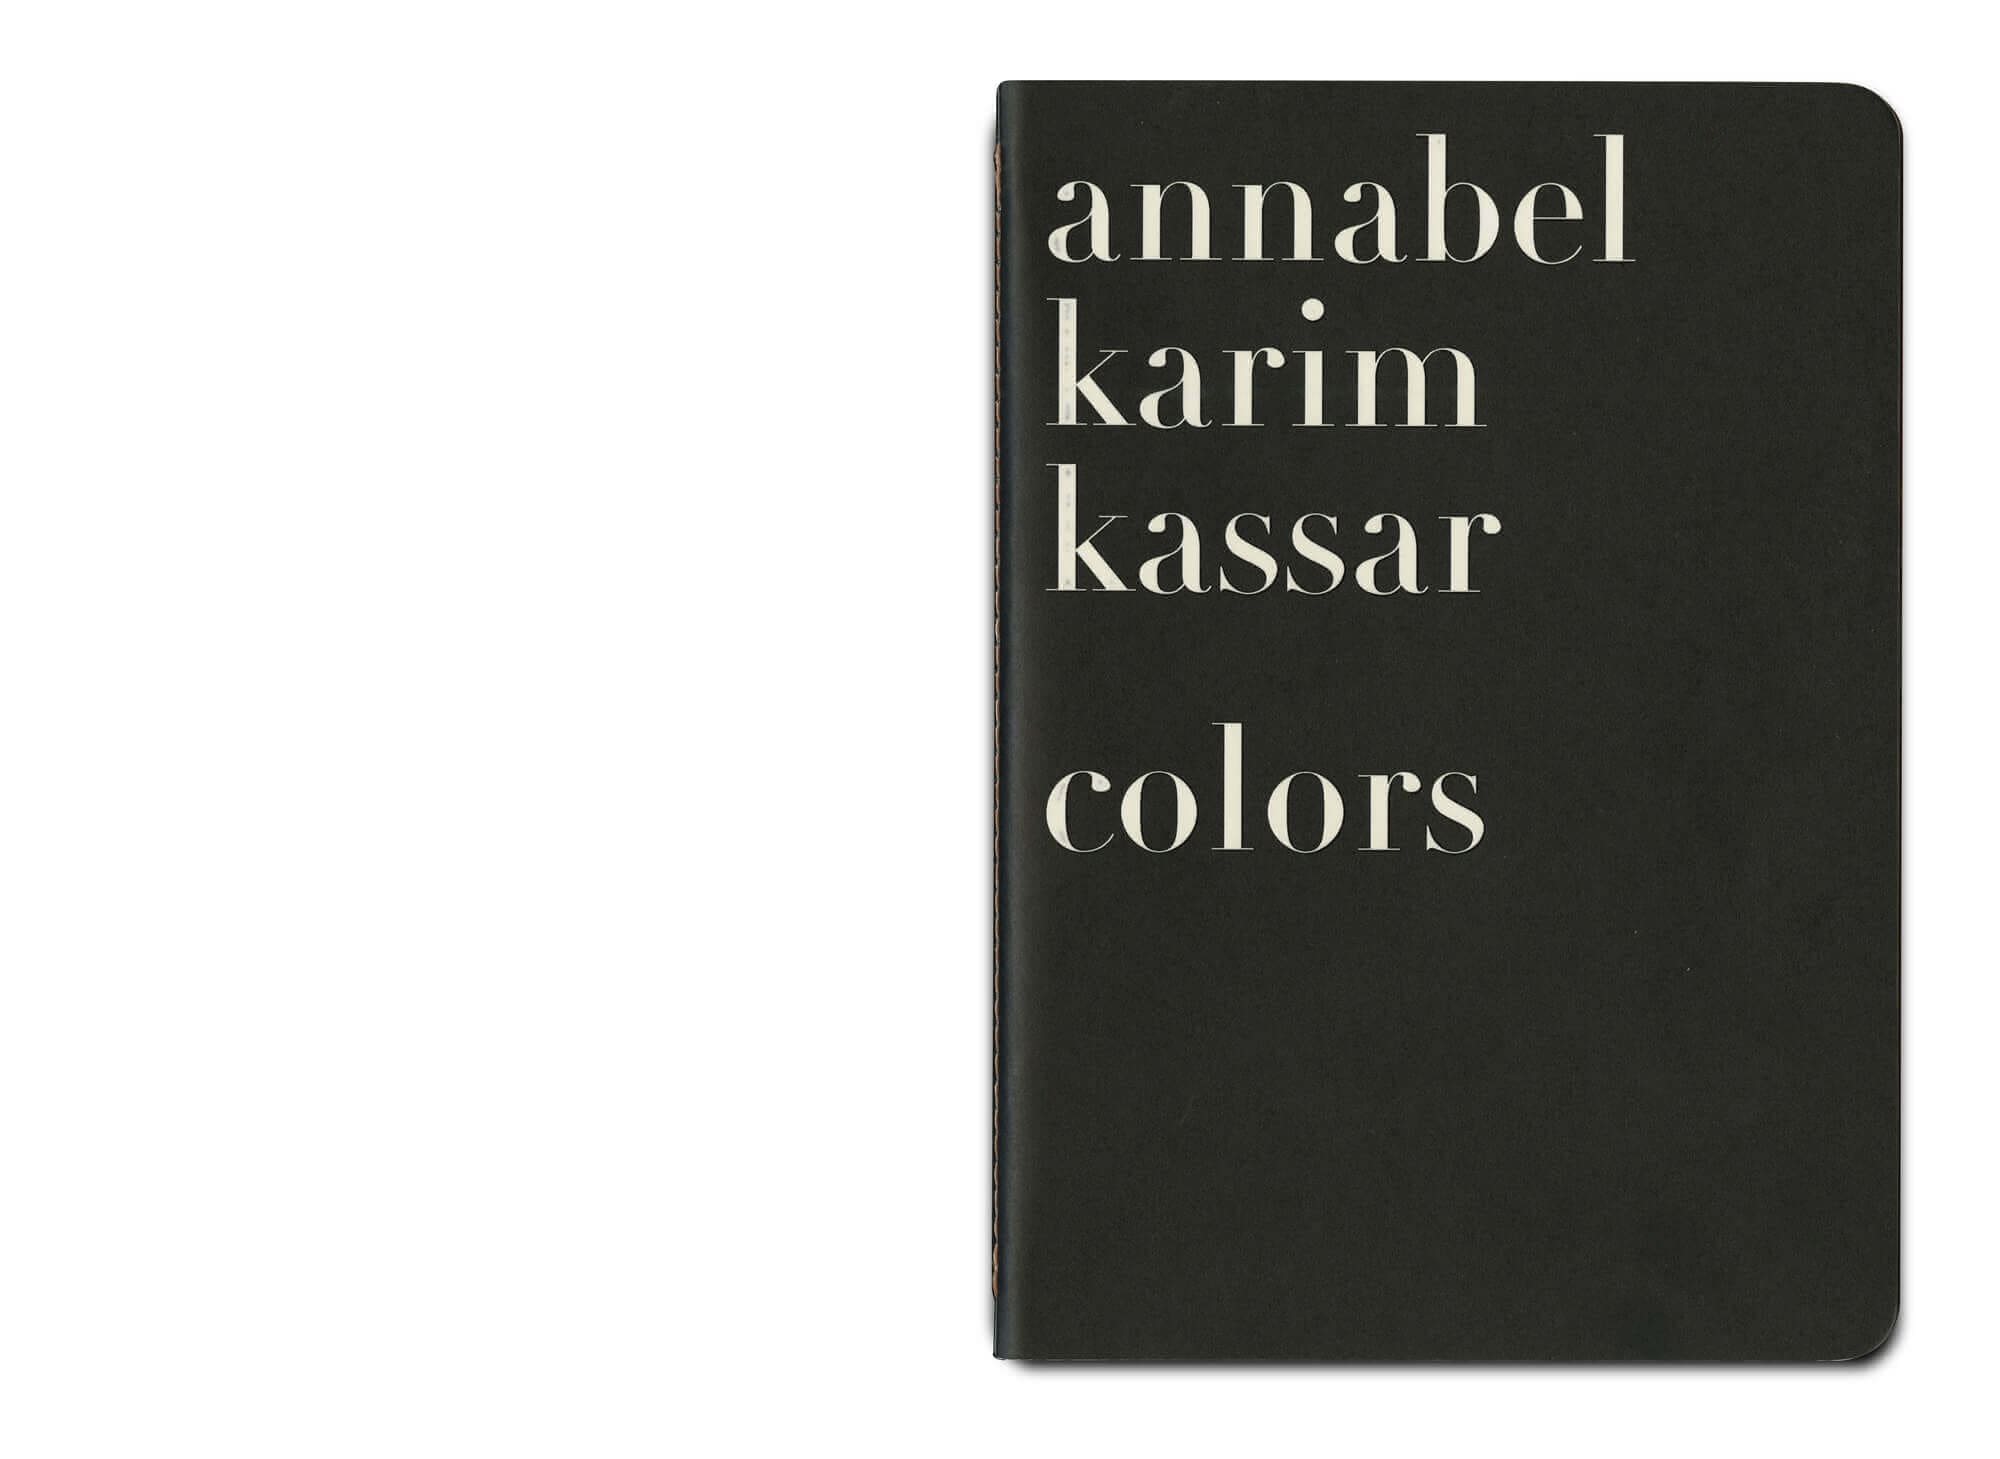 couverture du livre COLORS 2021 pour annabel Karin Kassar, design ichetkar